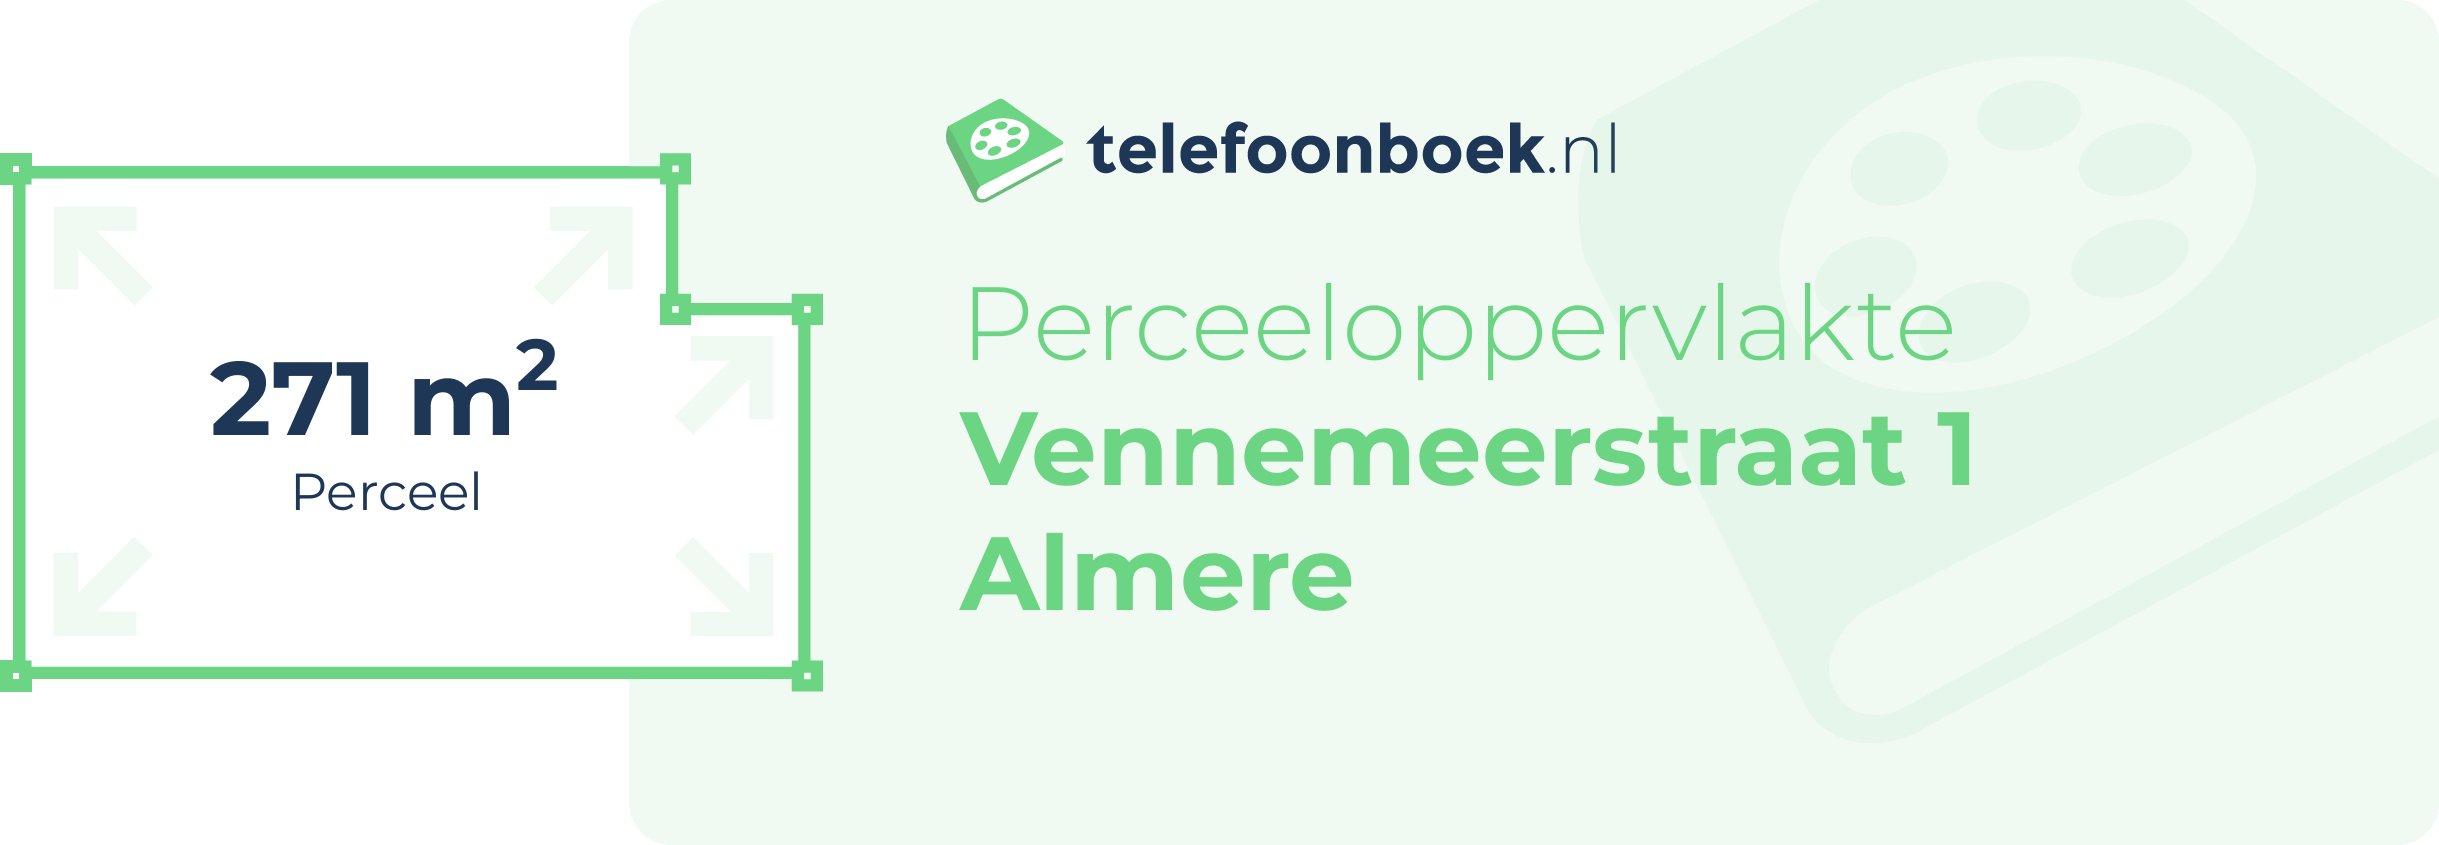 Perceeloppervlakte Vennemeerstraat 1 Almere